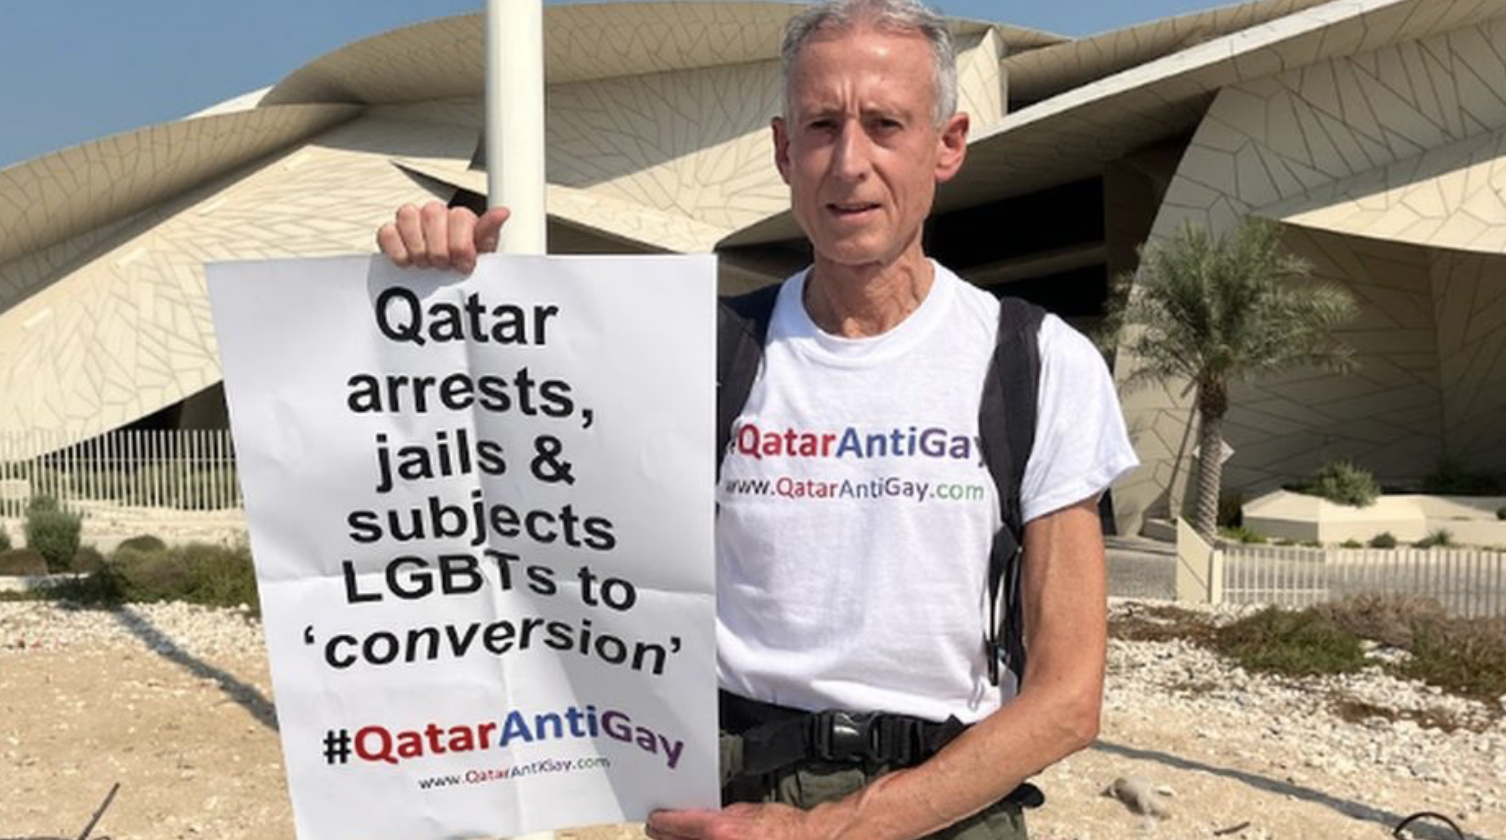 Un militant LGTB+ britannique manisfeste au Qatar, la police intervient